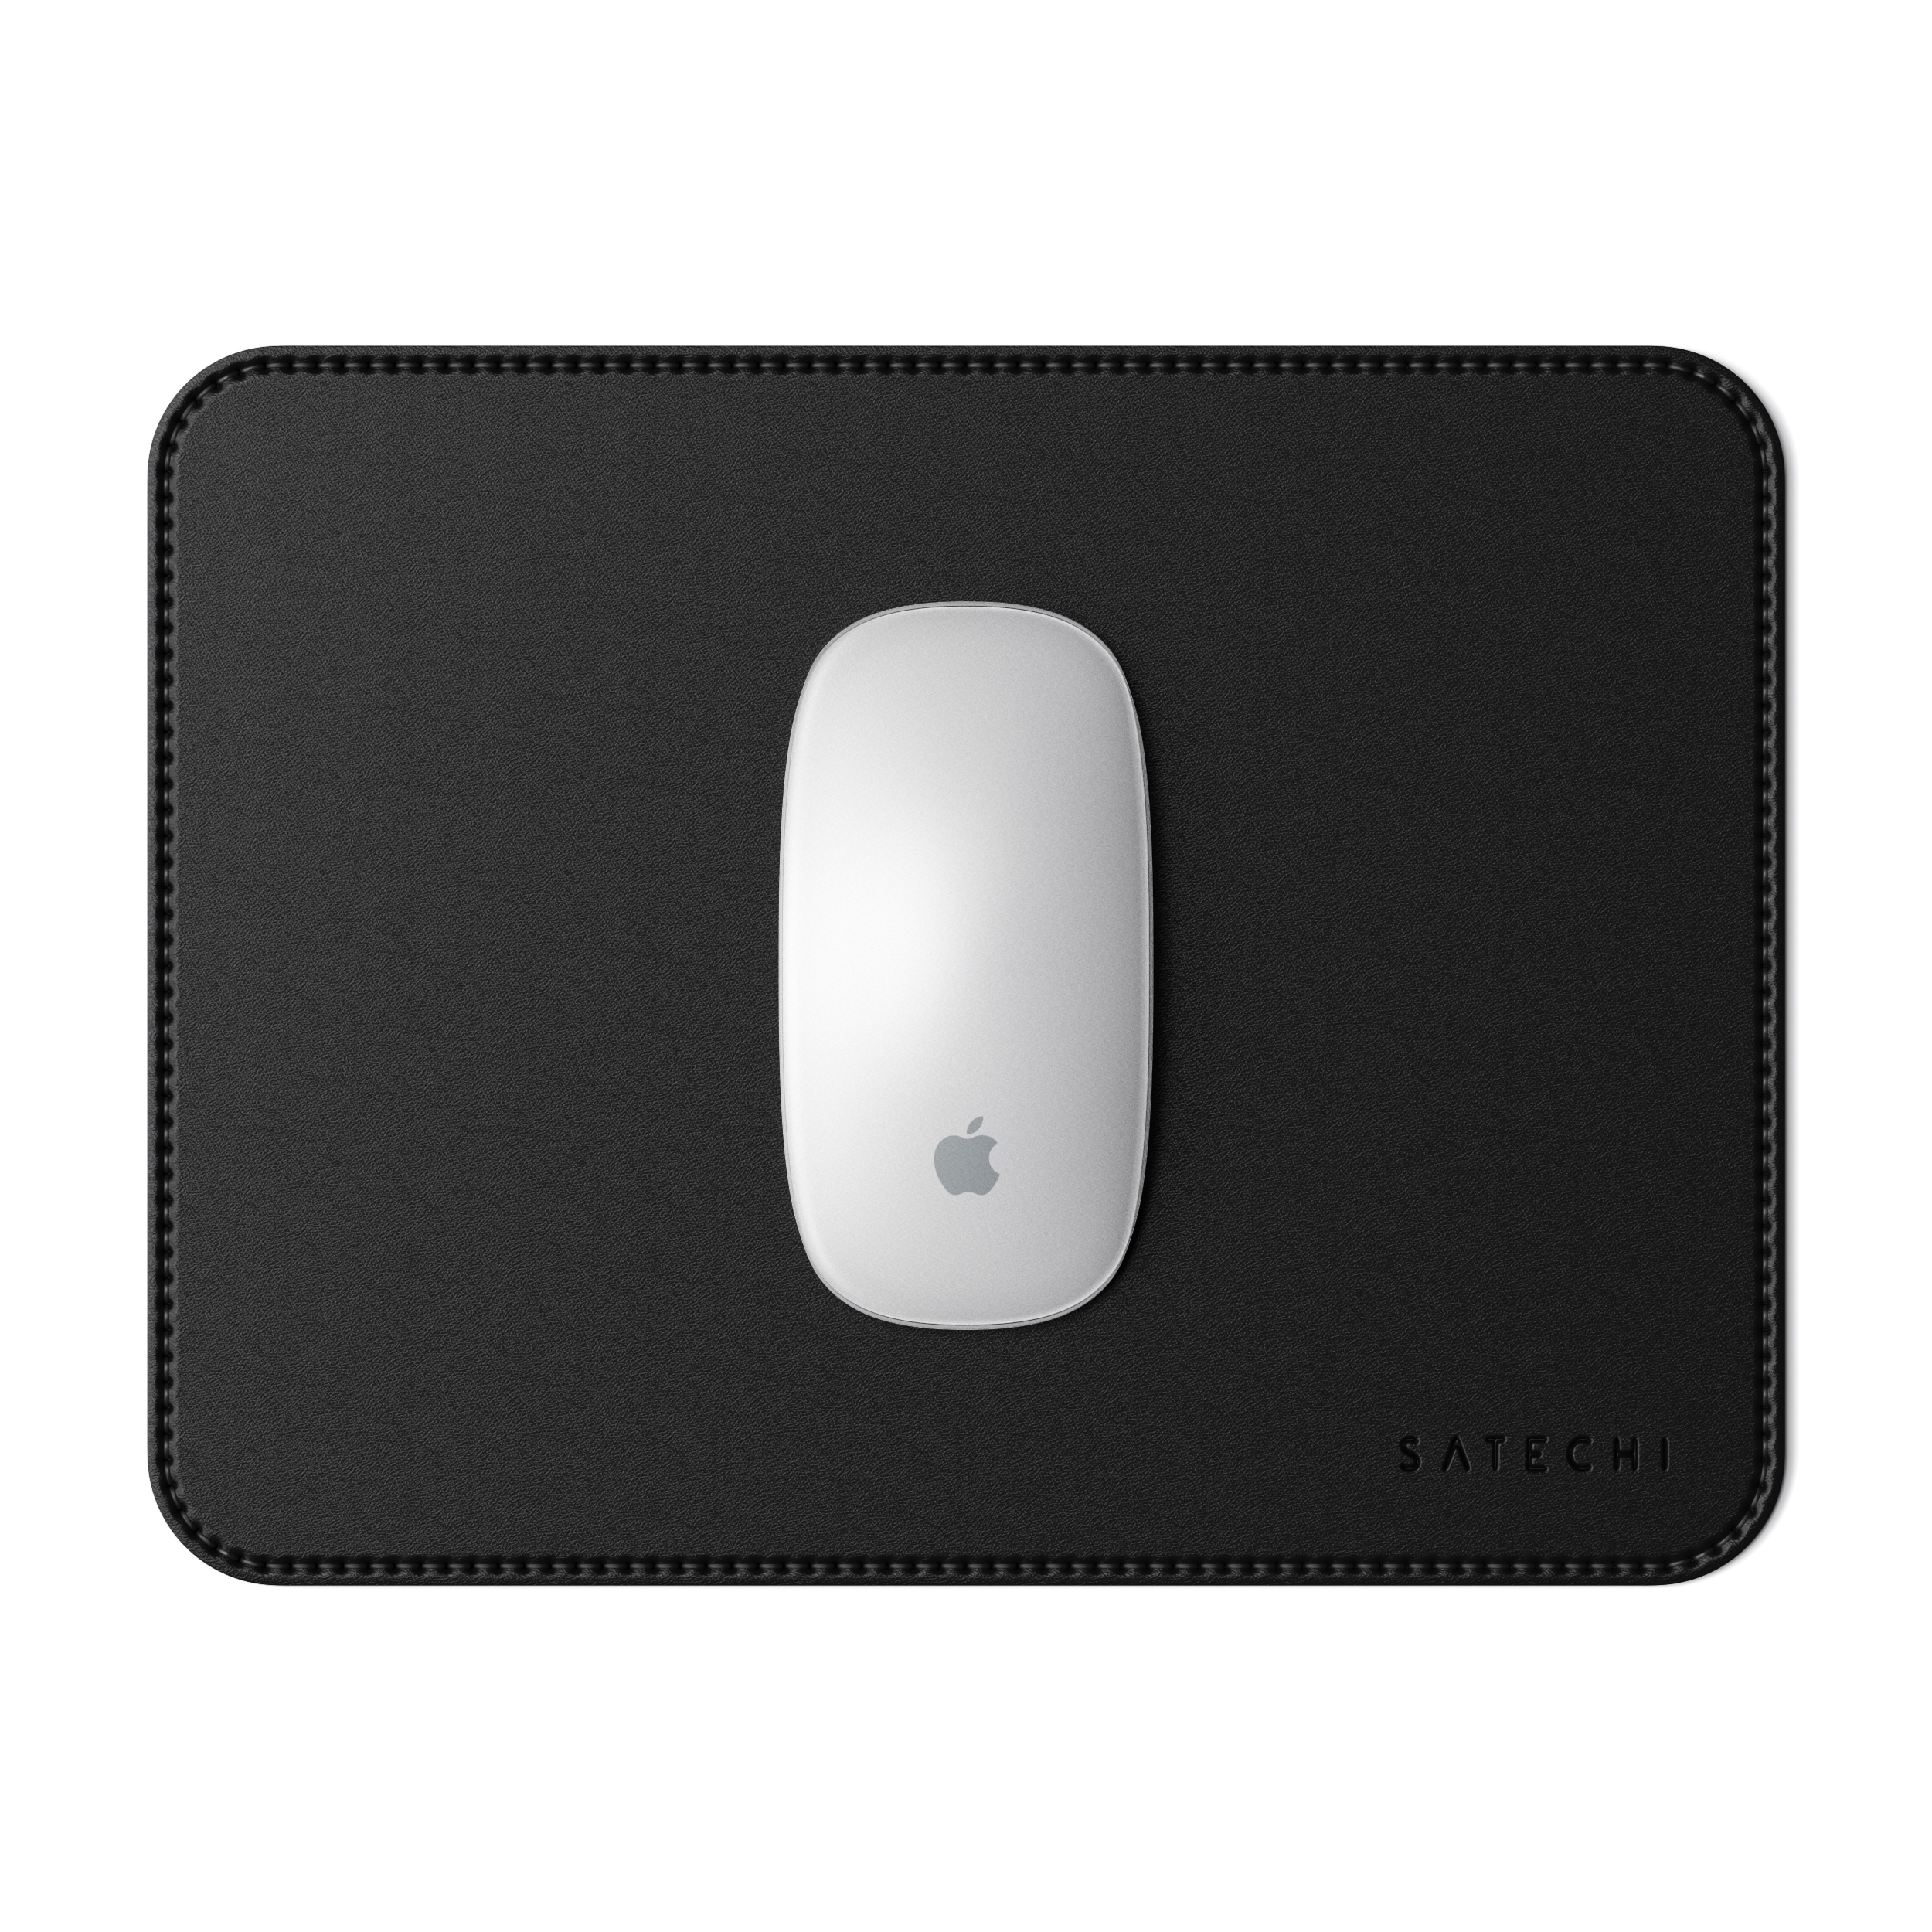 SATECHI Eco-Leather Mouse Pad - Black cm (19 x 24,89 cm) Mousepad